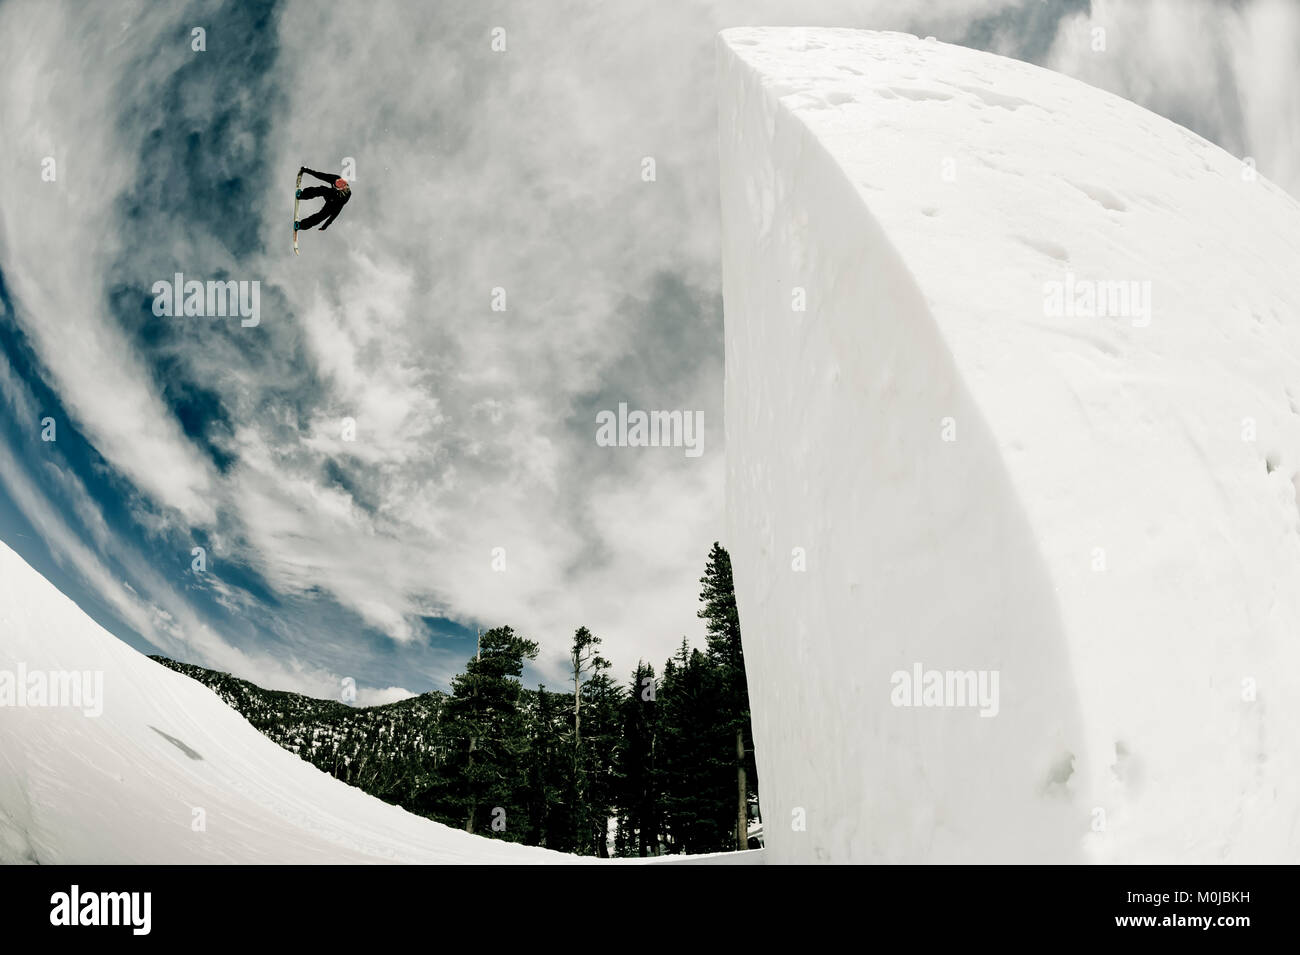 Un professionista snowboarder flipping mid-aria a Resort celeste; South Lake Tahoe, California, Stati Uniti d'America Foto Stock